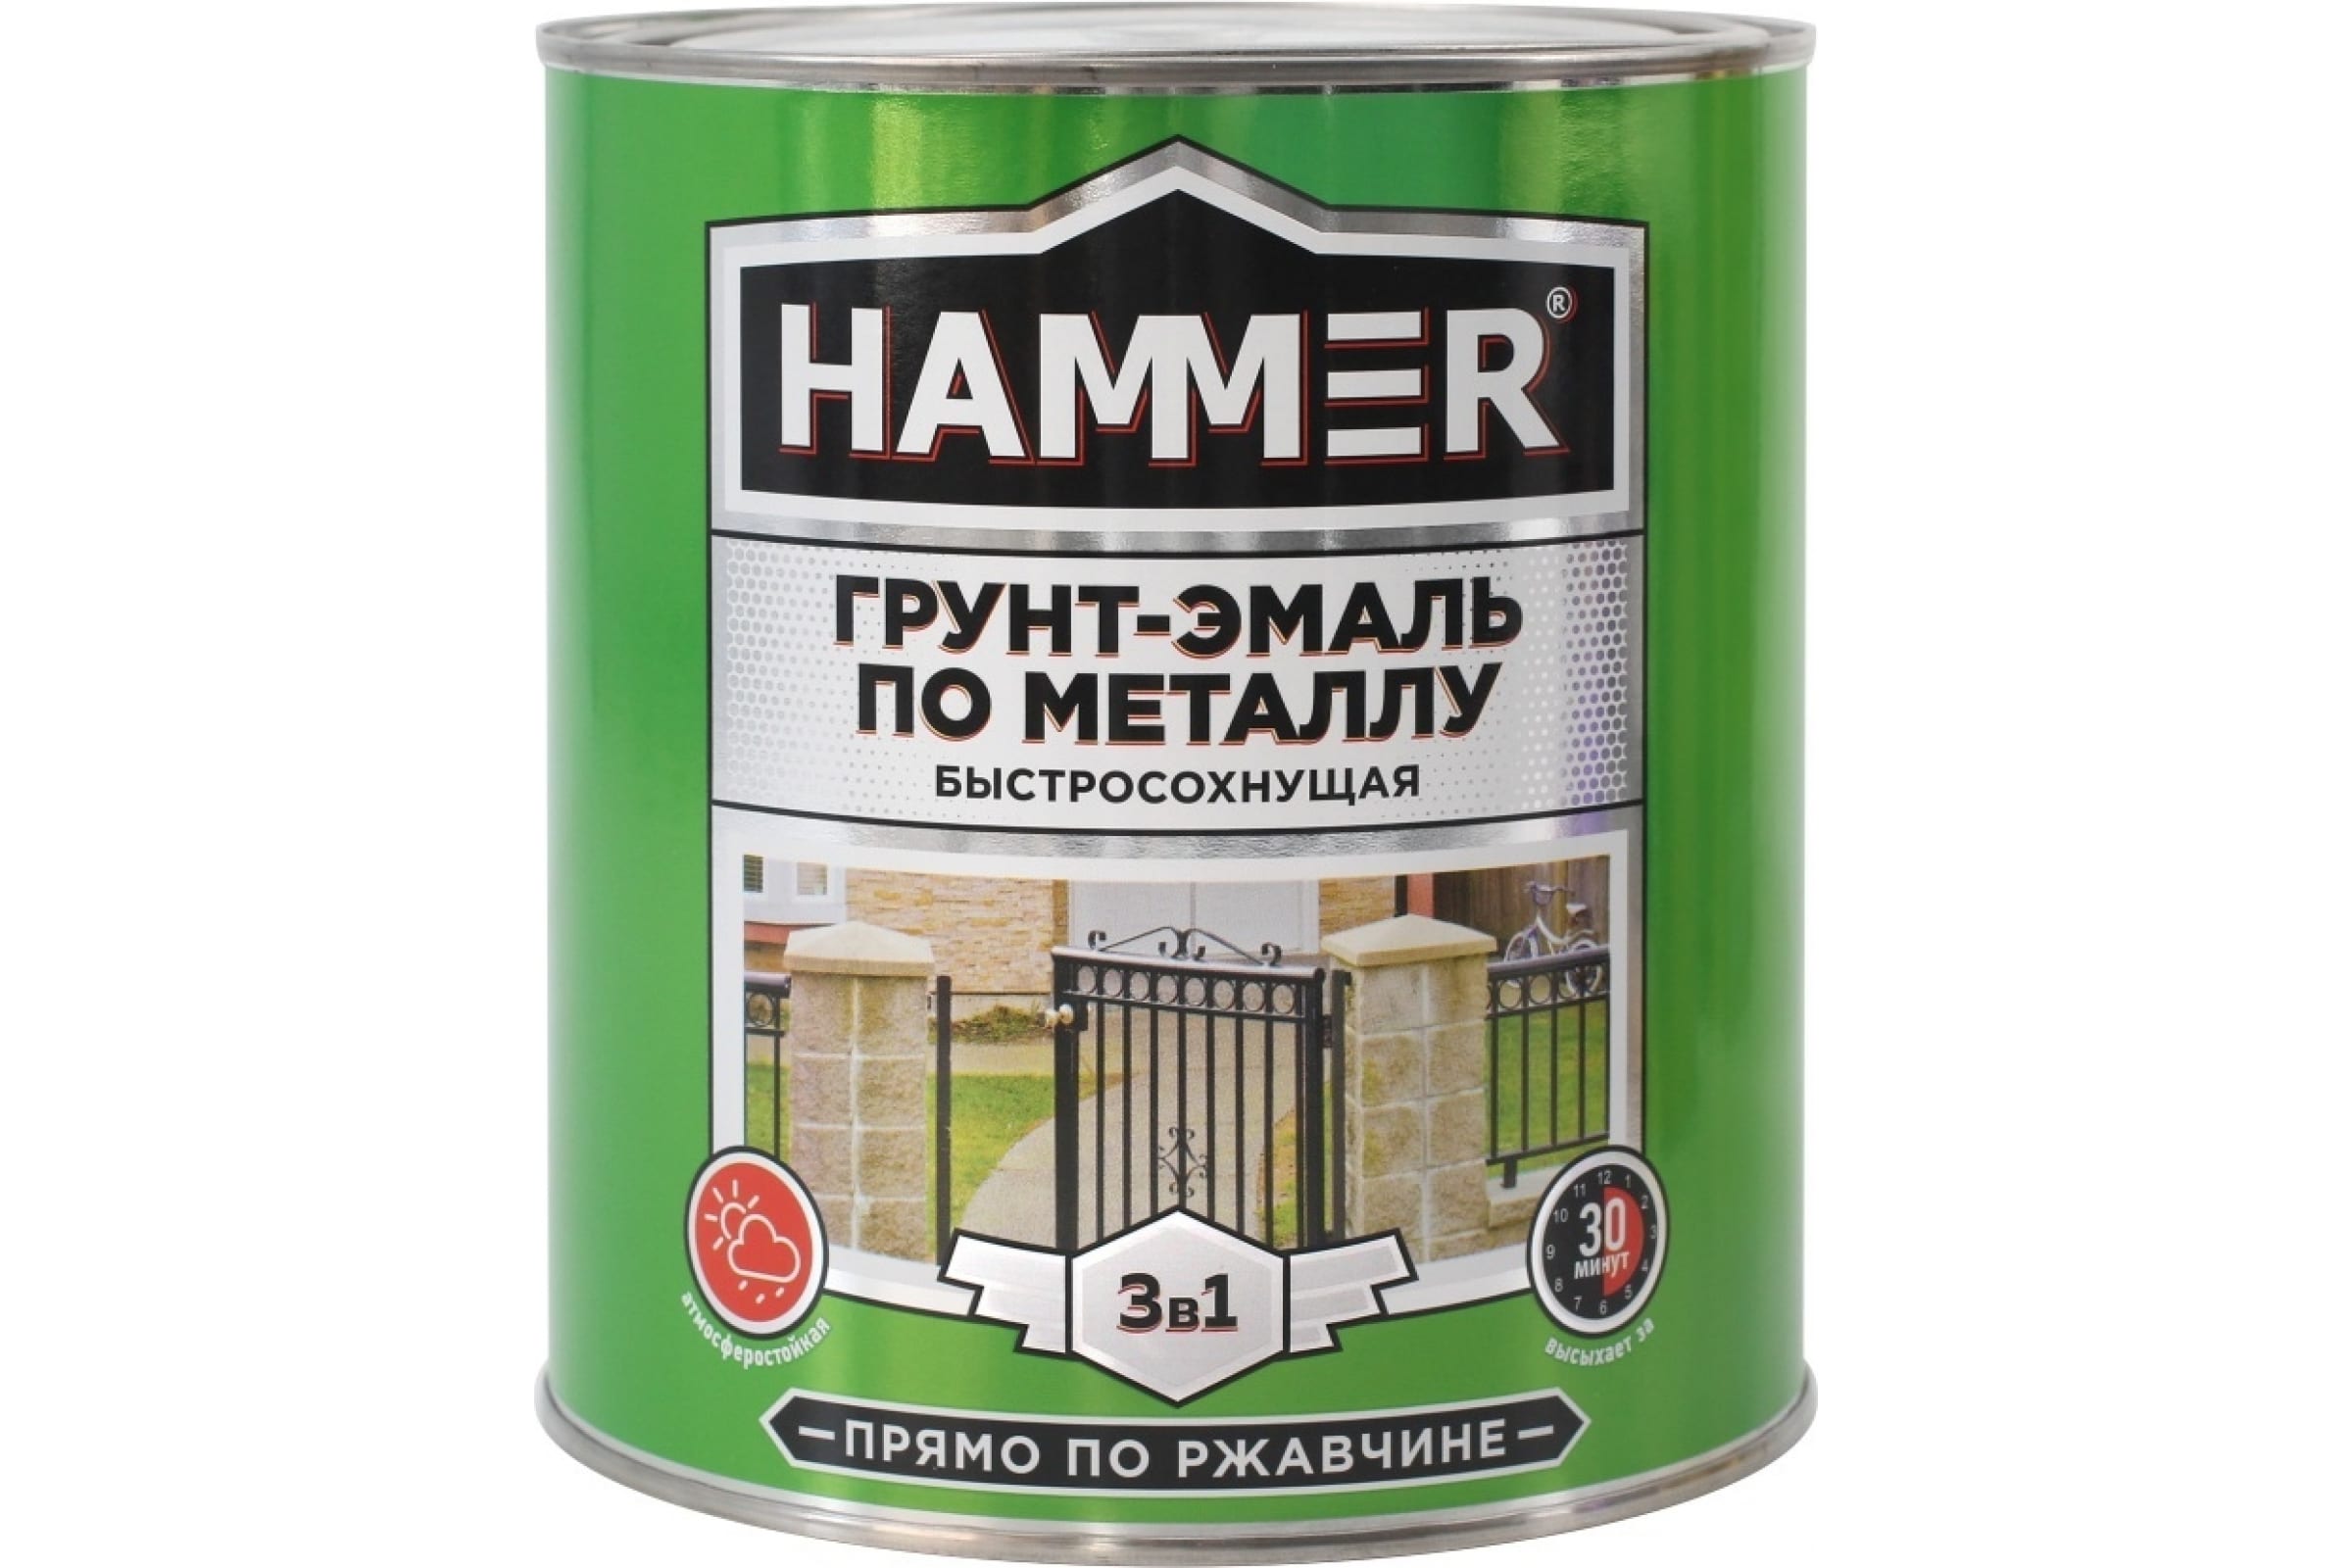 HAMMER Грунт-эмаль по металлу 3 в 1 б/с серая 2,7 кг / 4 ЭК000125866 грунт престиж мастер для бетонных полов акриловый 0 8 кг